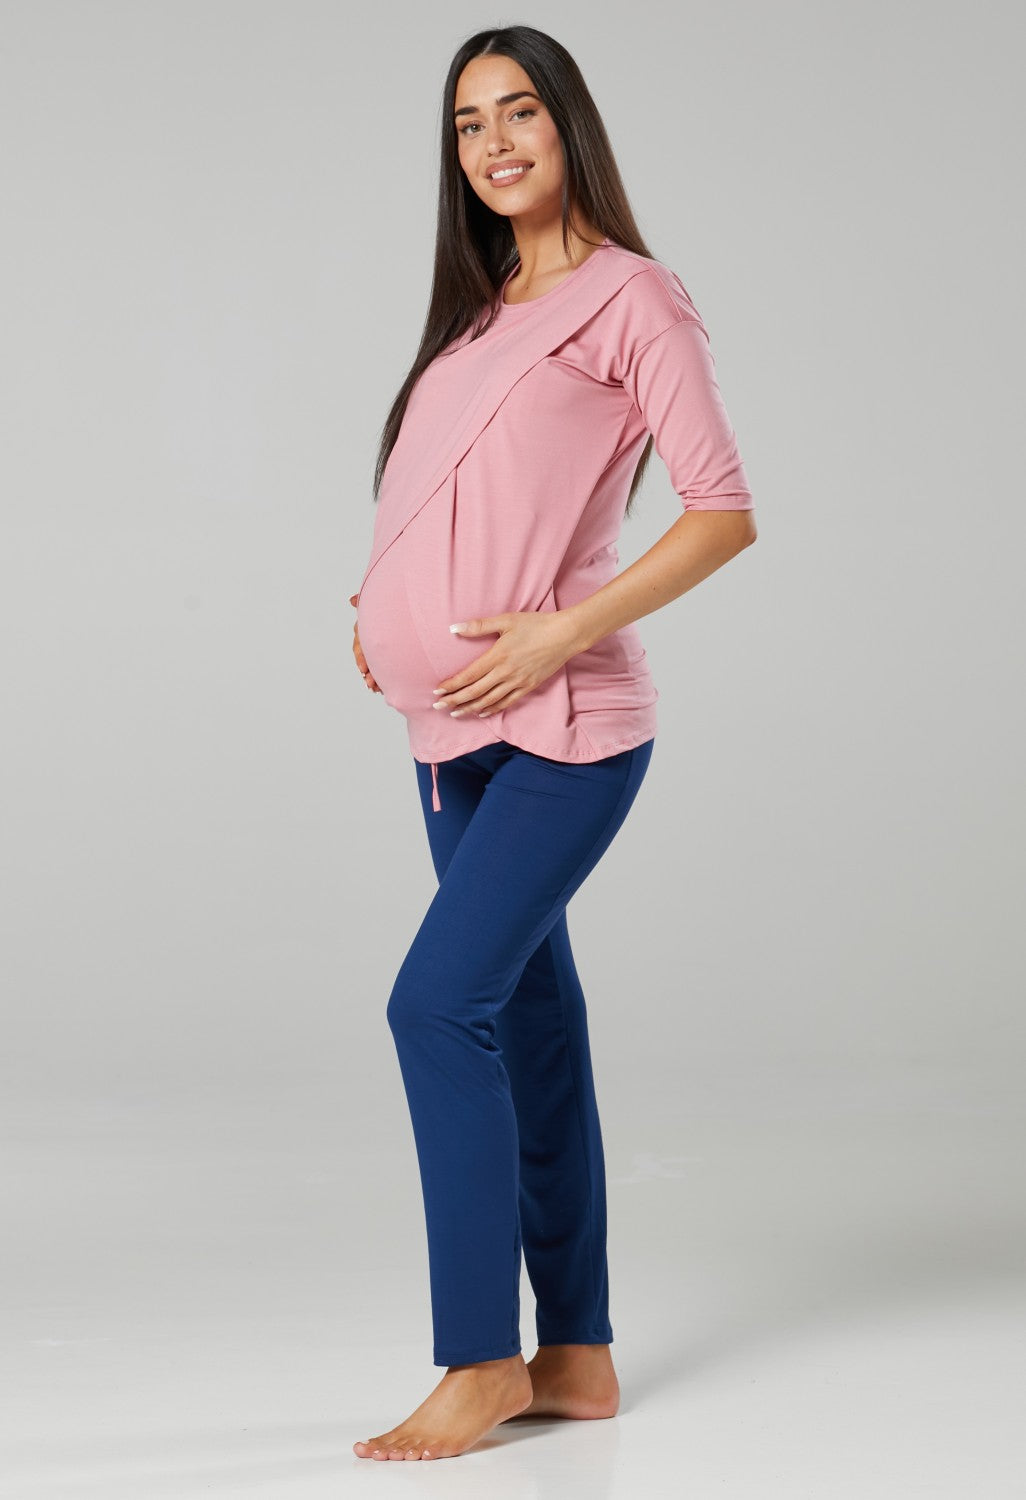 Maternity Nursing Pyjamas Loungewear Set